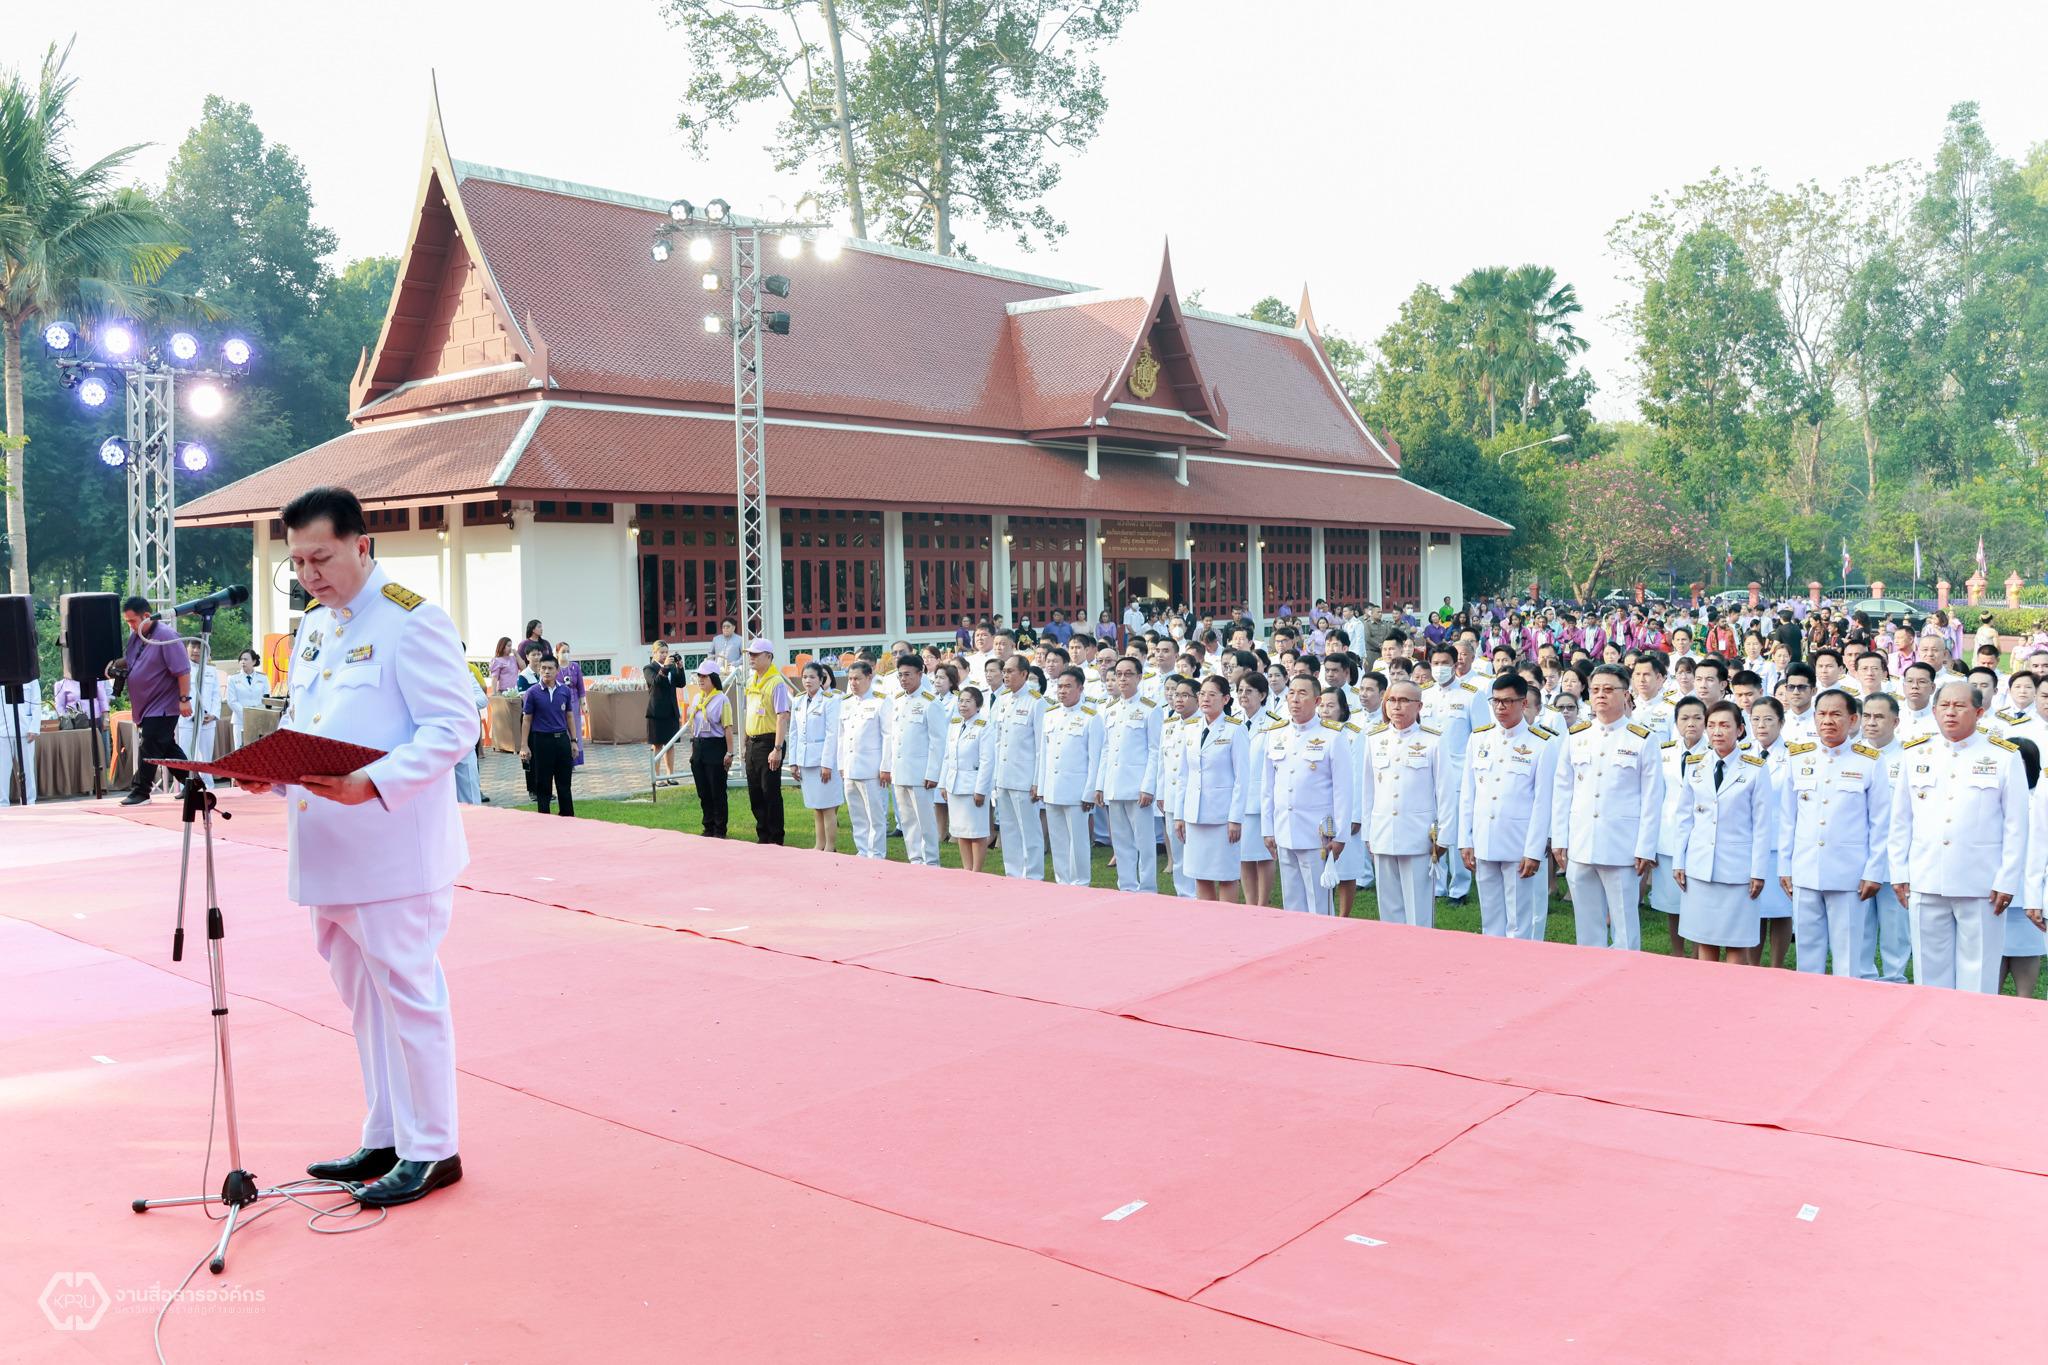 โครงการวันอนุรักษ์มรดกไทย เพื่อเฉลิมพระเกียรติสมเด็จพระกนิษฐาธิราชเจ้า กรมสมเด็จพระเทพรัตนราชสุดา ฯ สยามบรมราชกุมารี